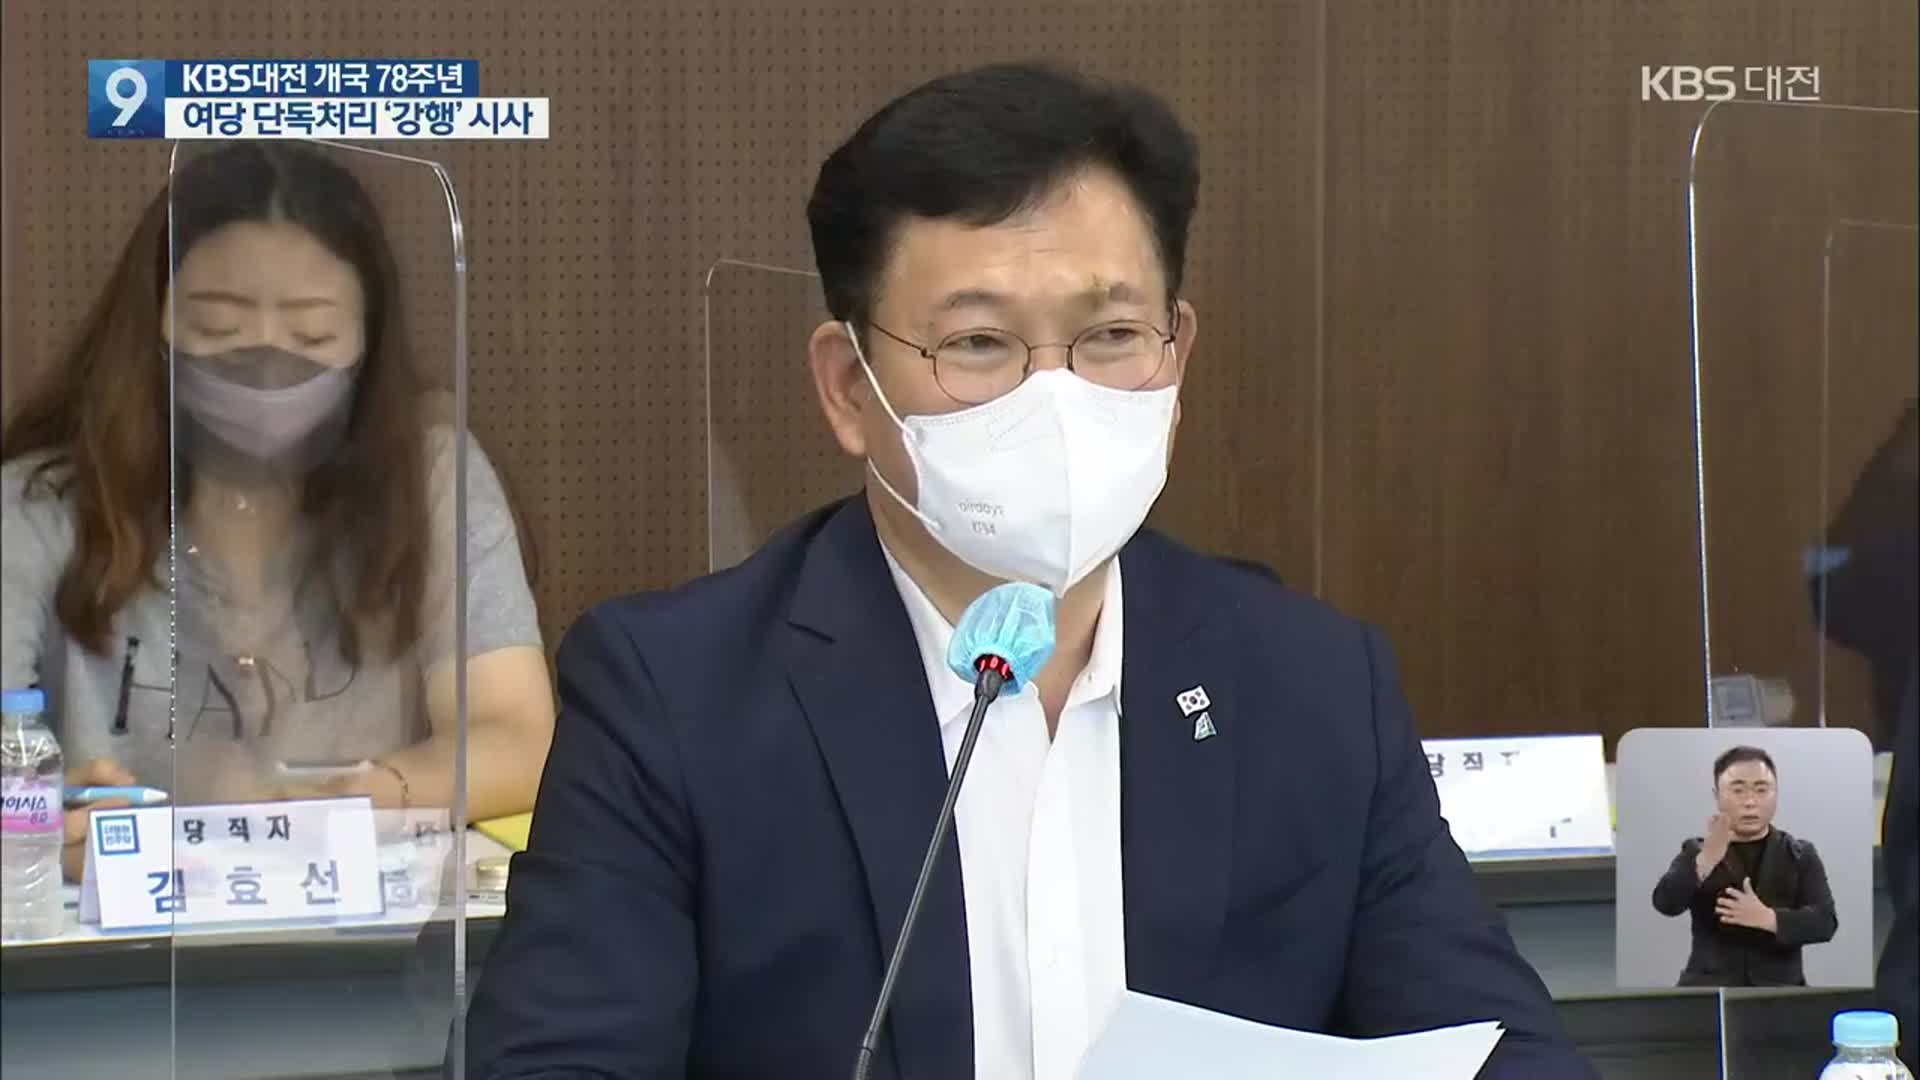 송영길 대표, “운영위 구성되면 국회법 개정안 단독 표결처리”